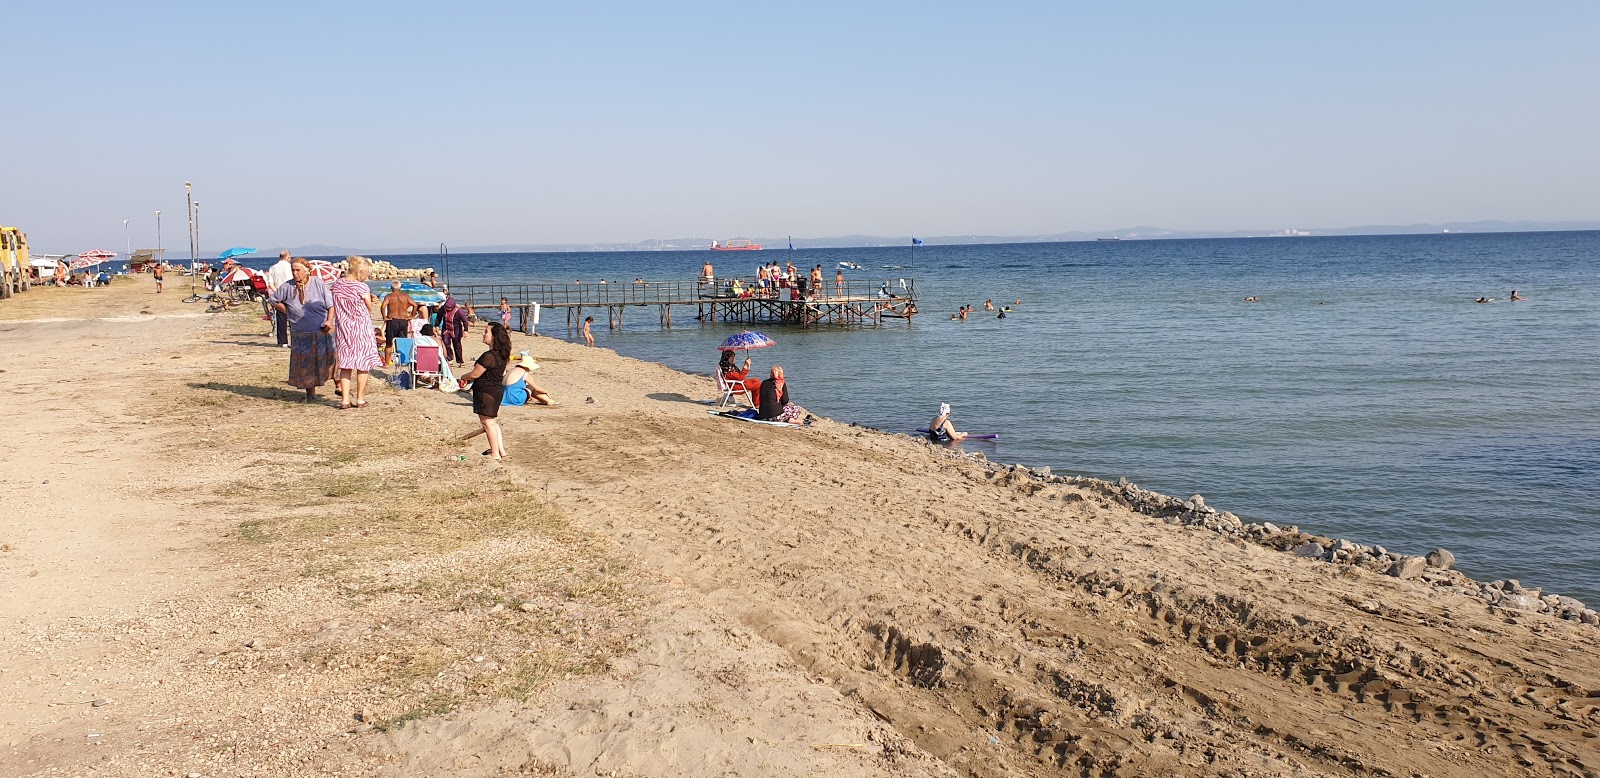 Fotografie cu Kizilcaterzi beach II cu o suprafață de nisip maro